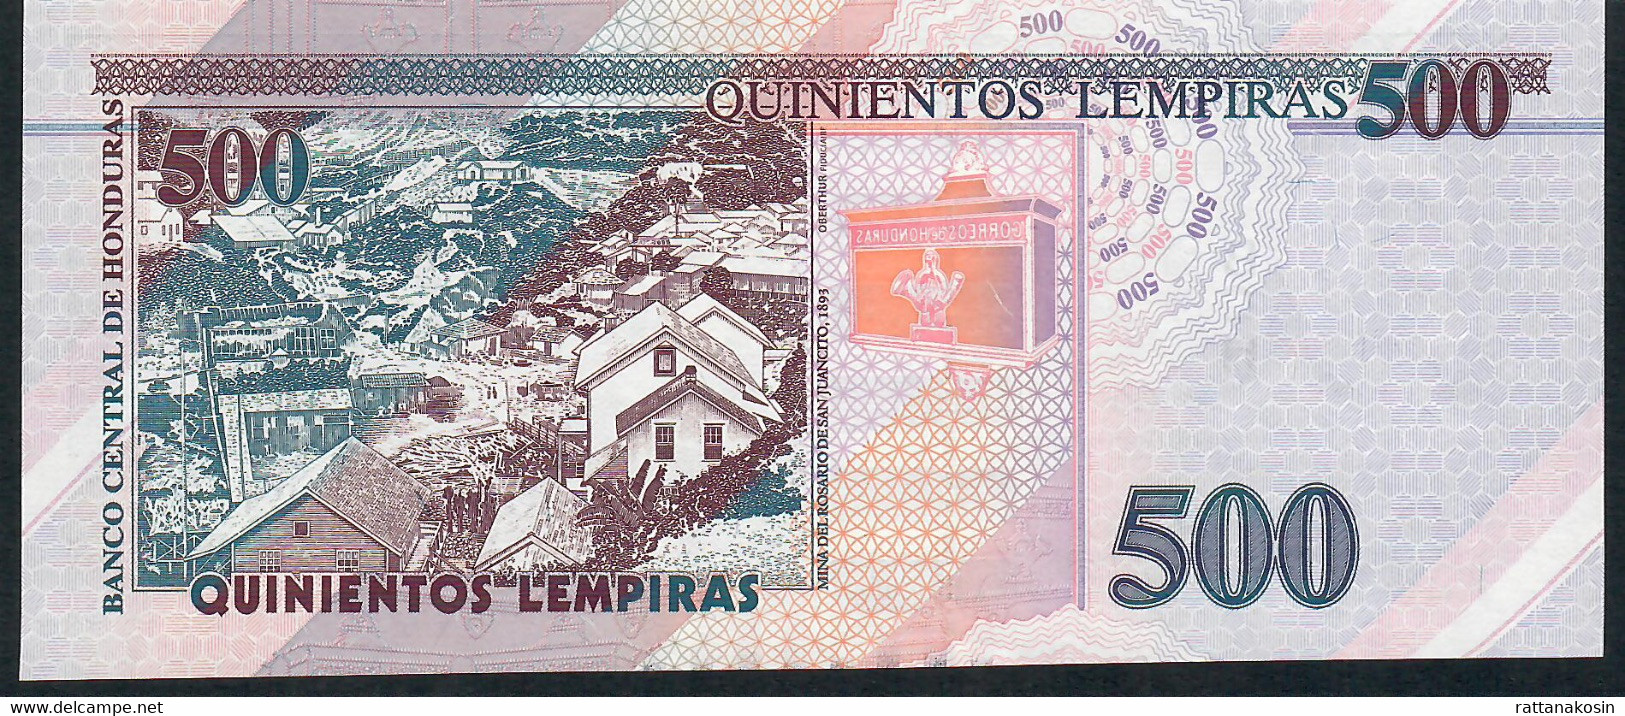 HONDURAS P103c  500 LEMPIRAS  28.12.2016 #AH   Issued 2018       UNC. - Honduras